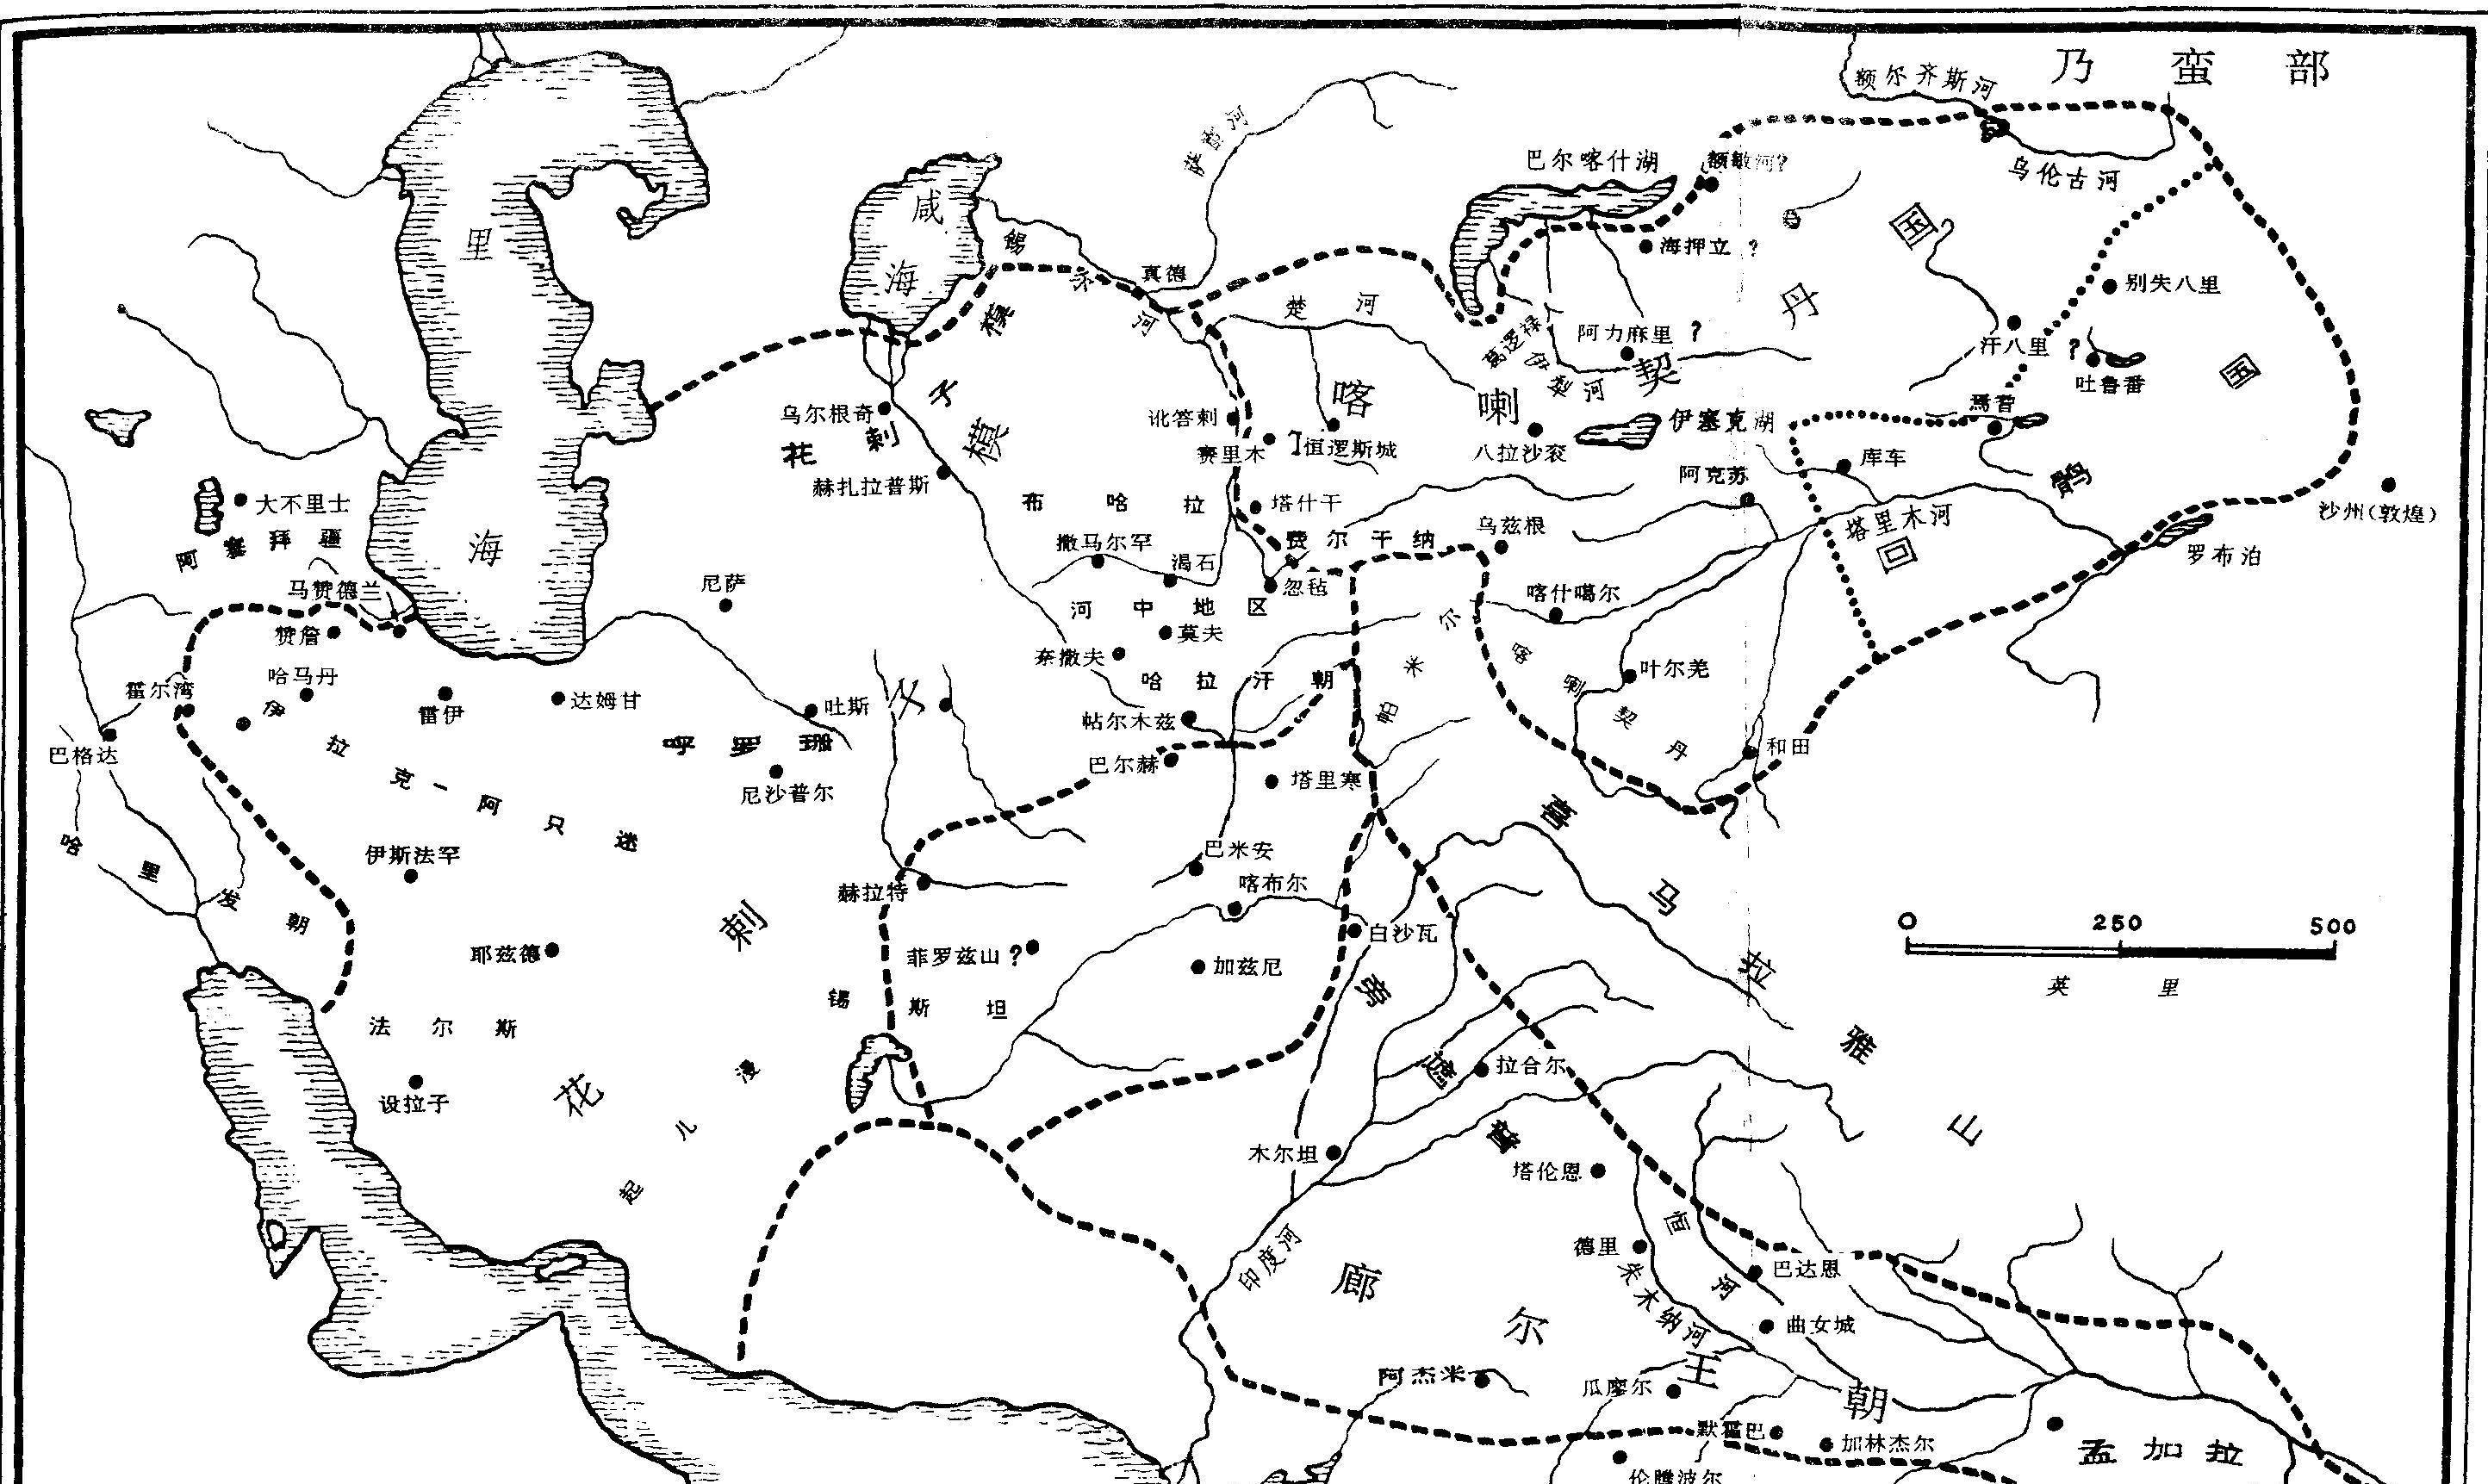 花剌子模帝国于12世纪开始兴起壮大,在此之前曾长期被阿拉伯人,塞尔柱